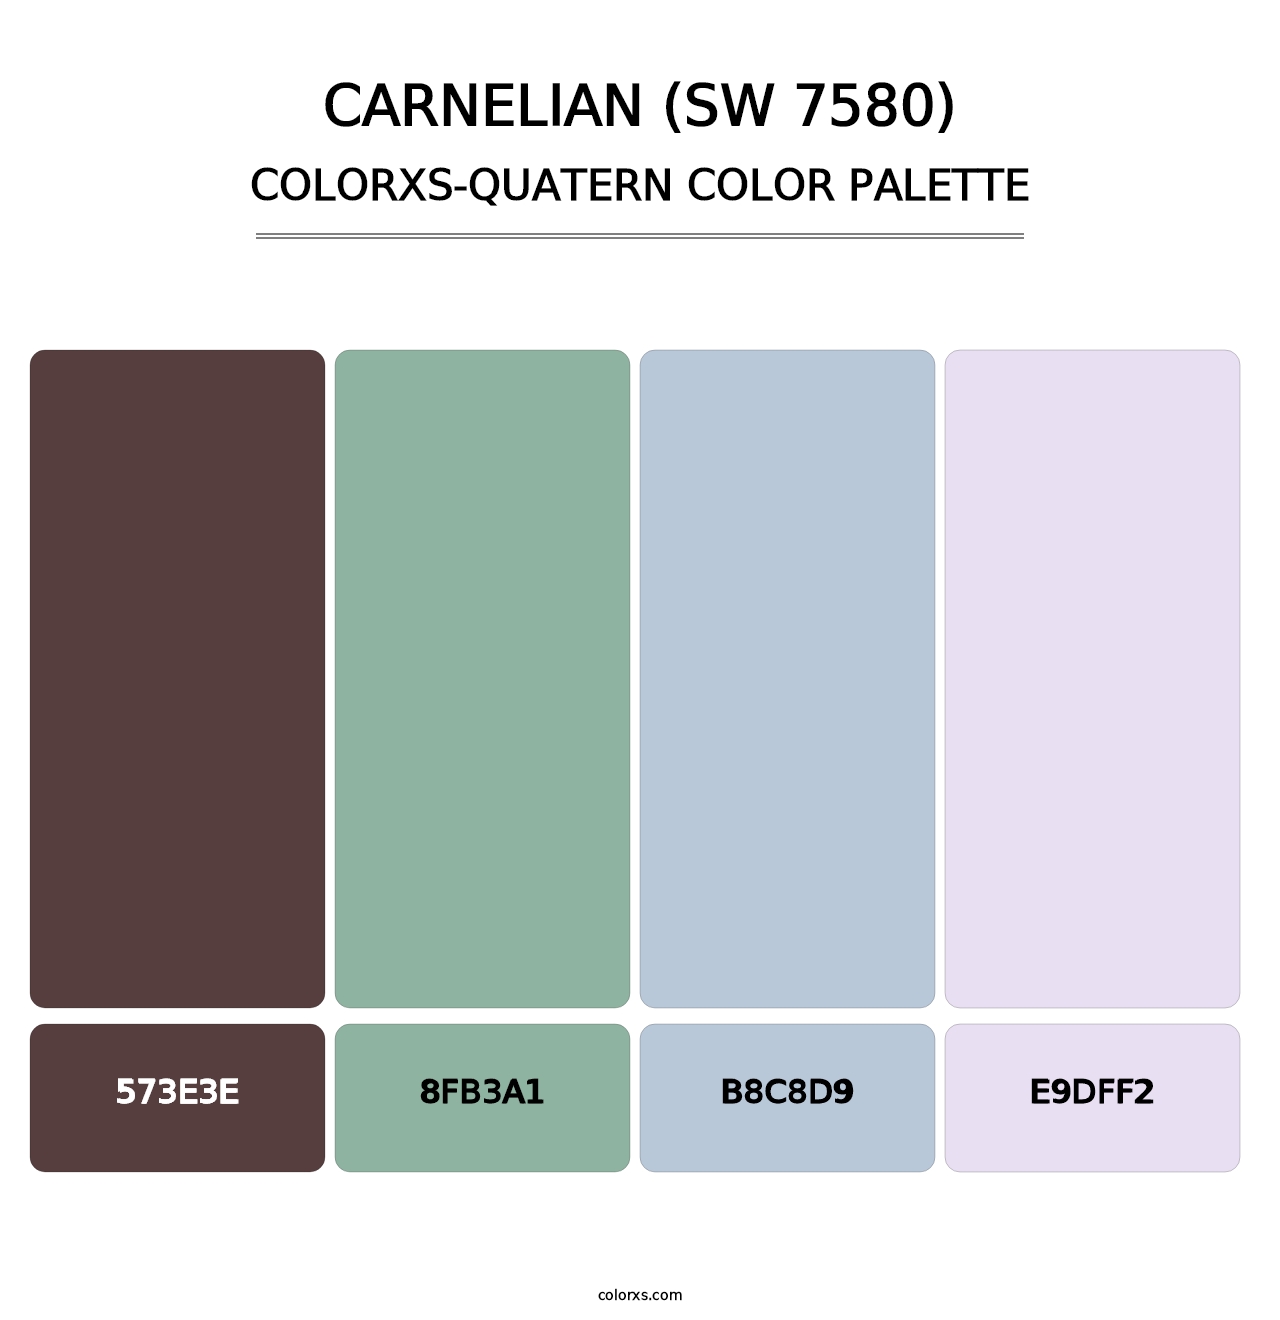 Carnelian (SW 7580) - Colorxs Quatern Palette